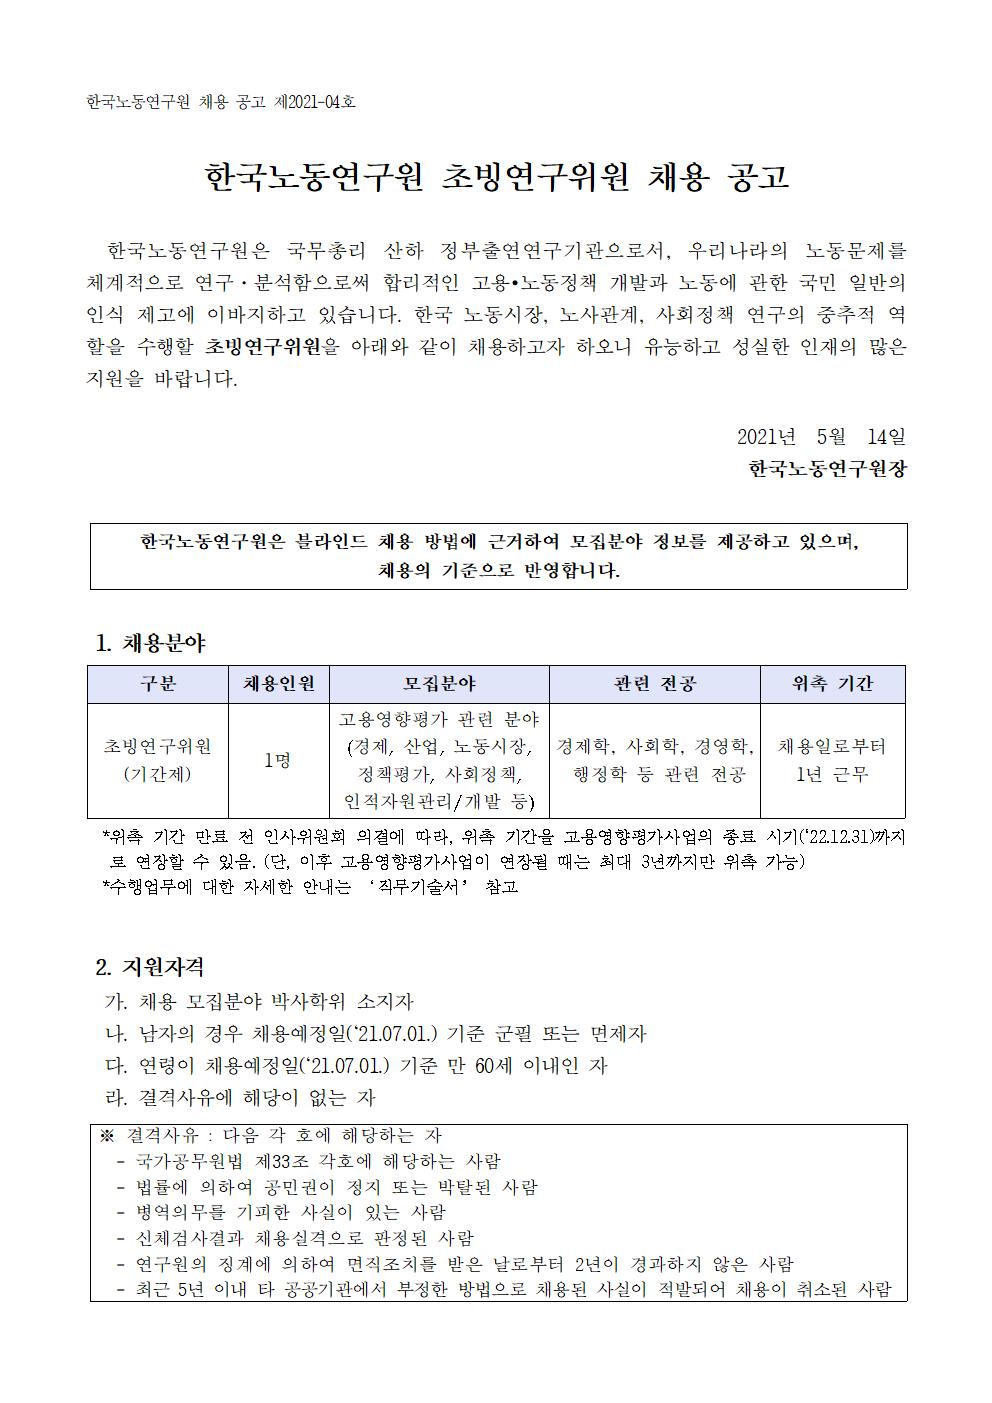 첨부파일 2021-04호 초빙연구위원 채용 공고문.pdf  참고